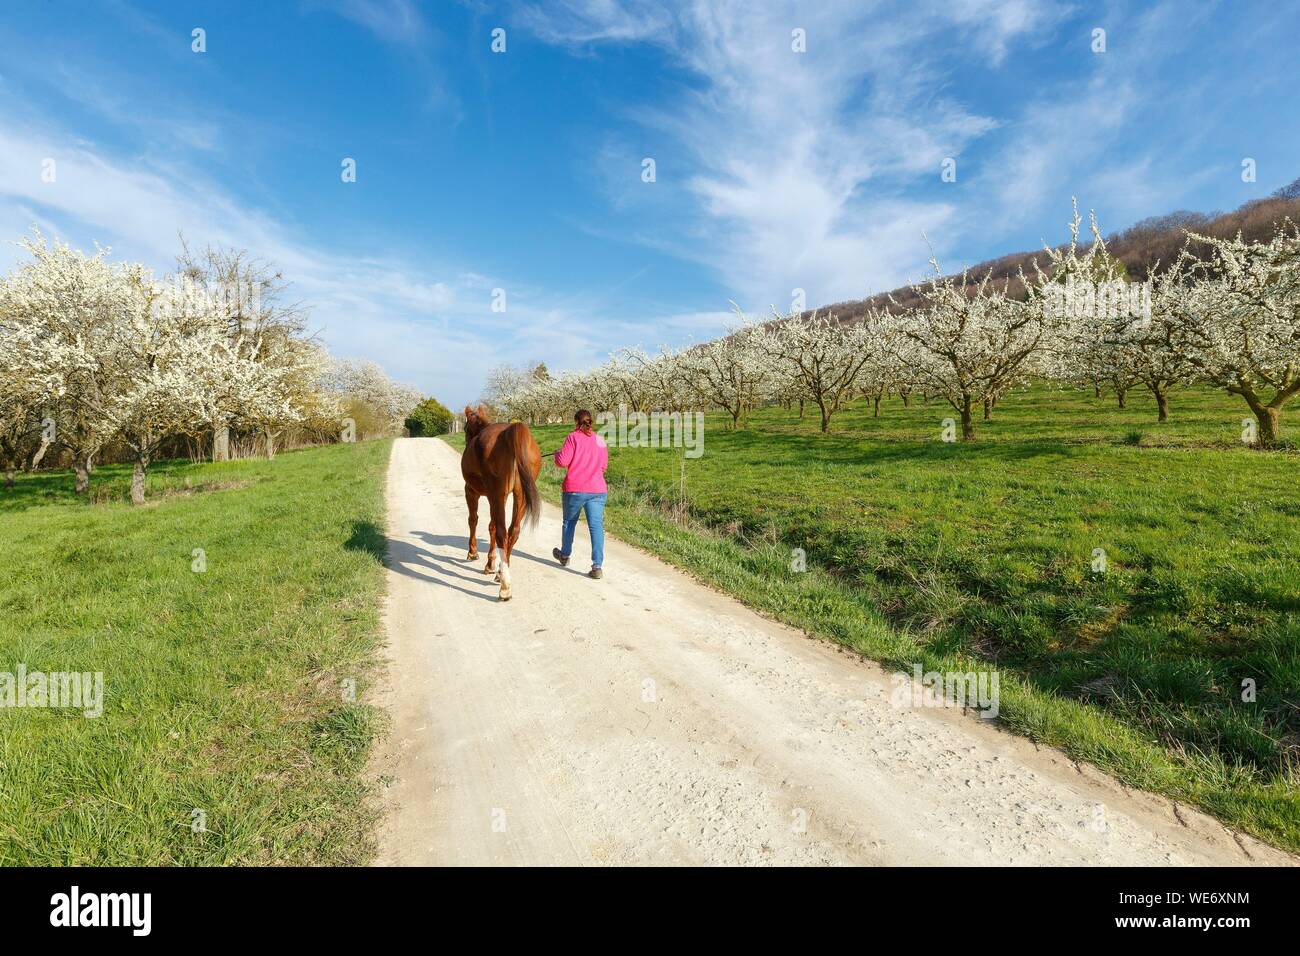 France, Meurthe et Moselle, Côtes de Toul, Trondes, pruniers en fleurs de cerisier, cheval et femme marche Banque D'Images